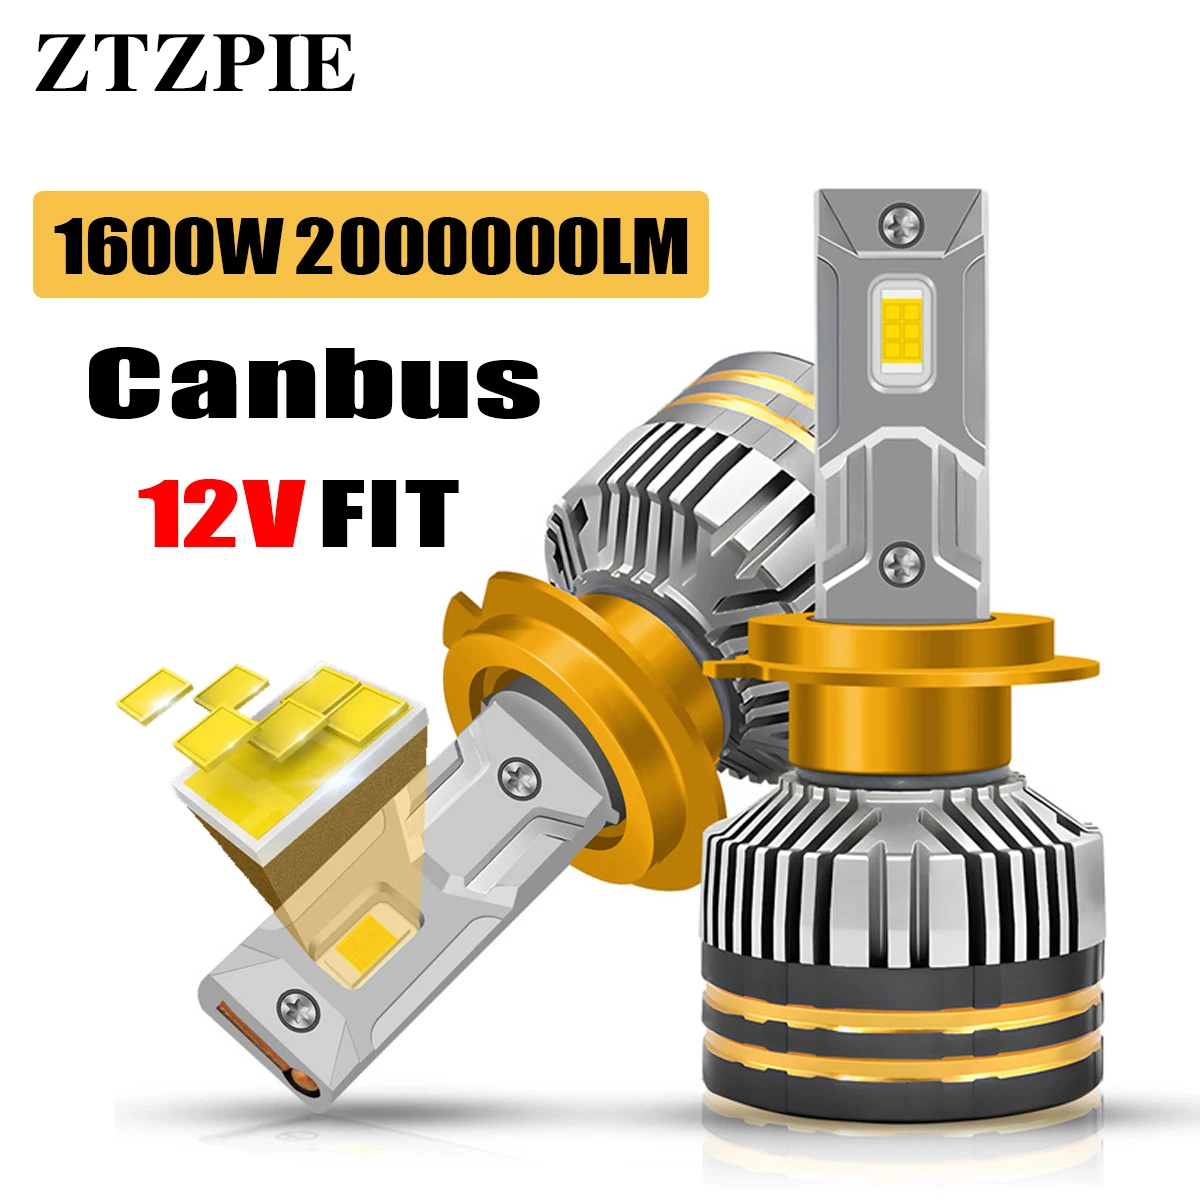 

ZTZPIE k7c Canbus автомобильная лампа головного света 6000K HB3 HB4 9005 9006 H1 H7 H4 H11, лампы CSP 3570, противотуманная фара 1600 Вт